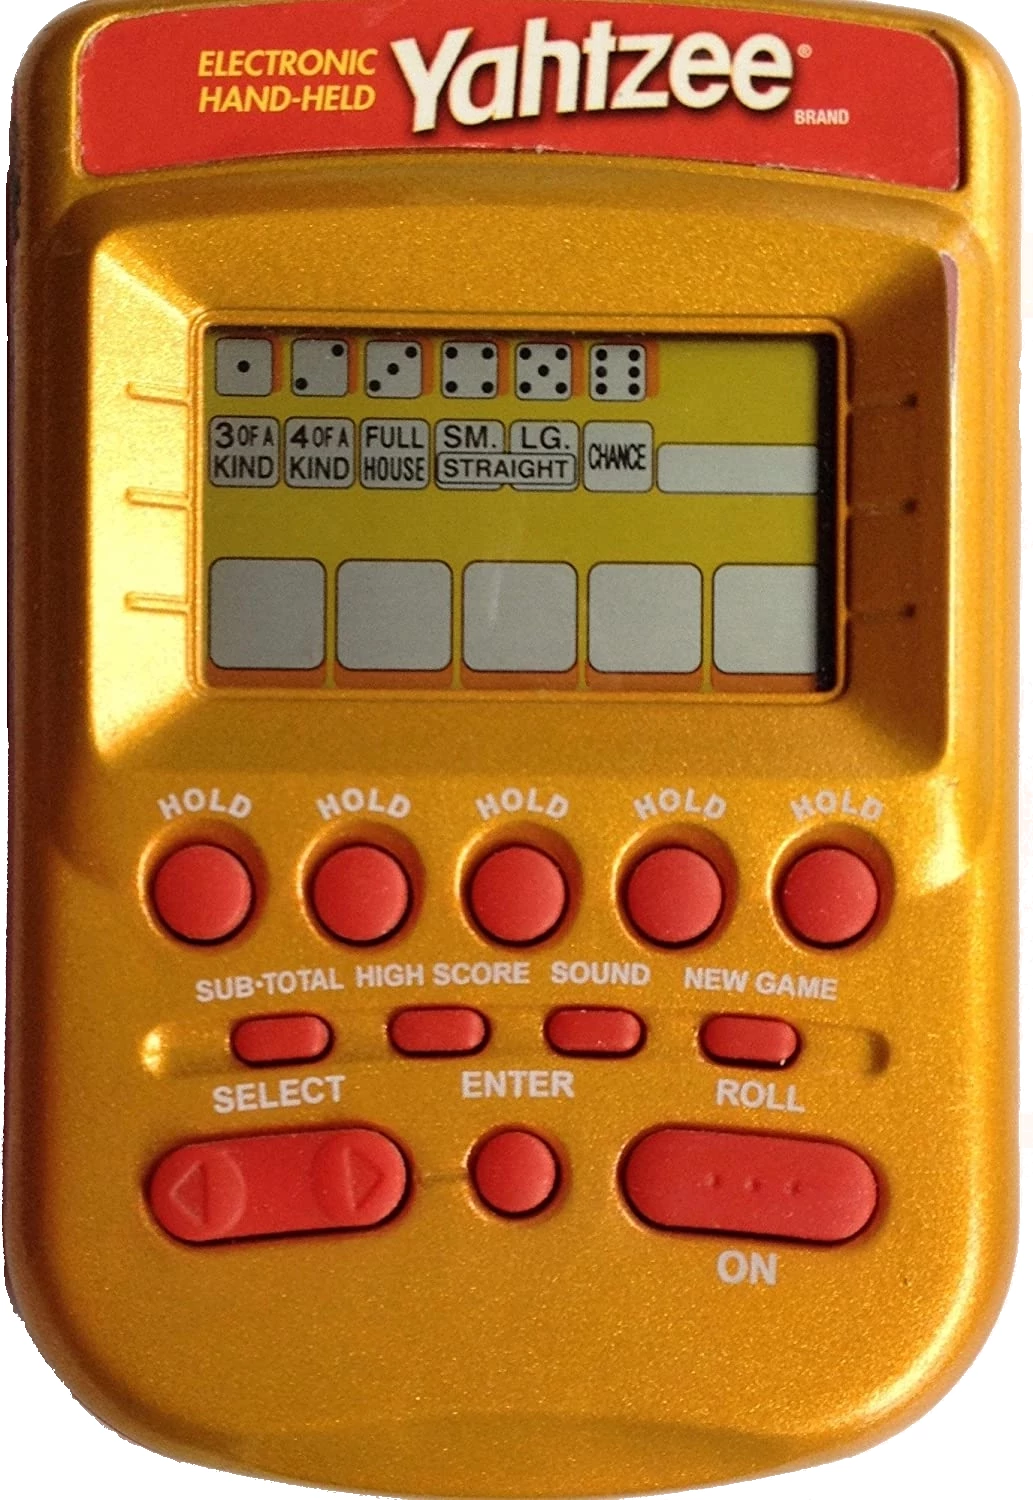 2004 electronic handheld Yahtzee game